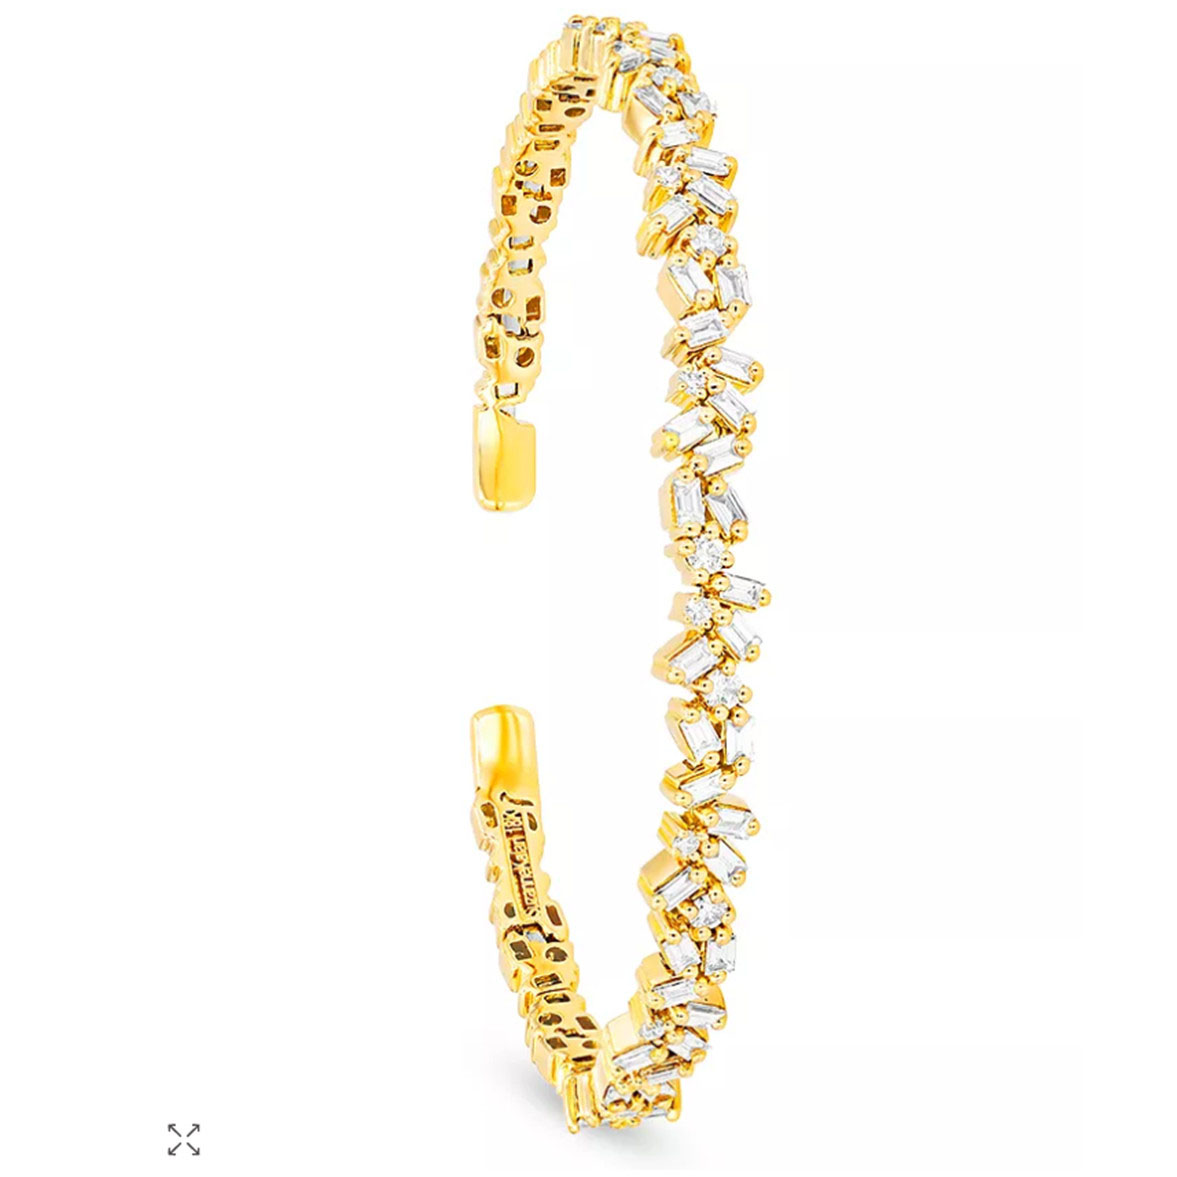 Pulsera tipo brazalete con circonitas en oro amarillo de 18 quilates, proveedores de joyas en oro vermeil